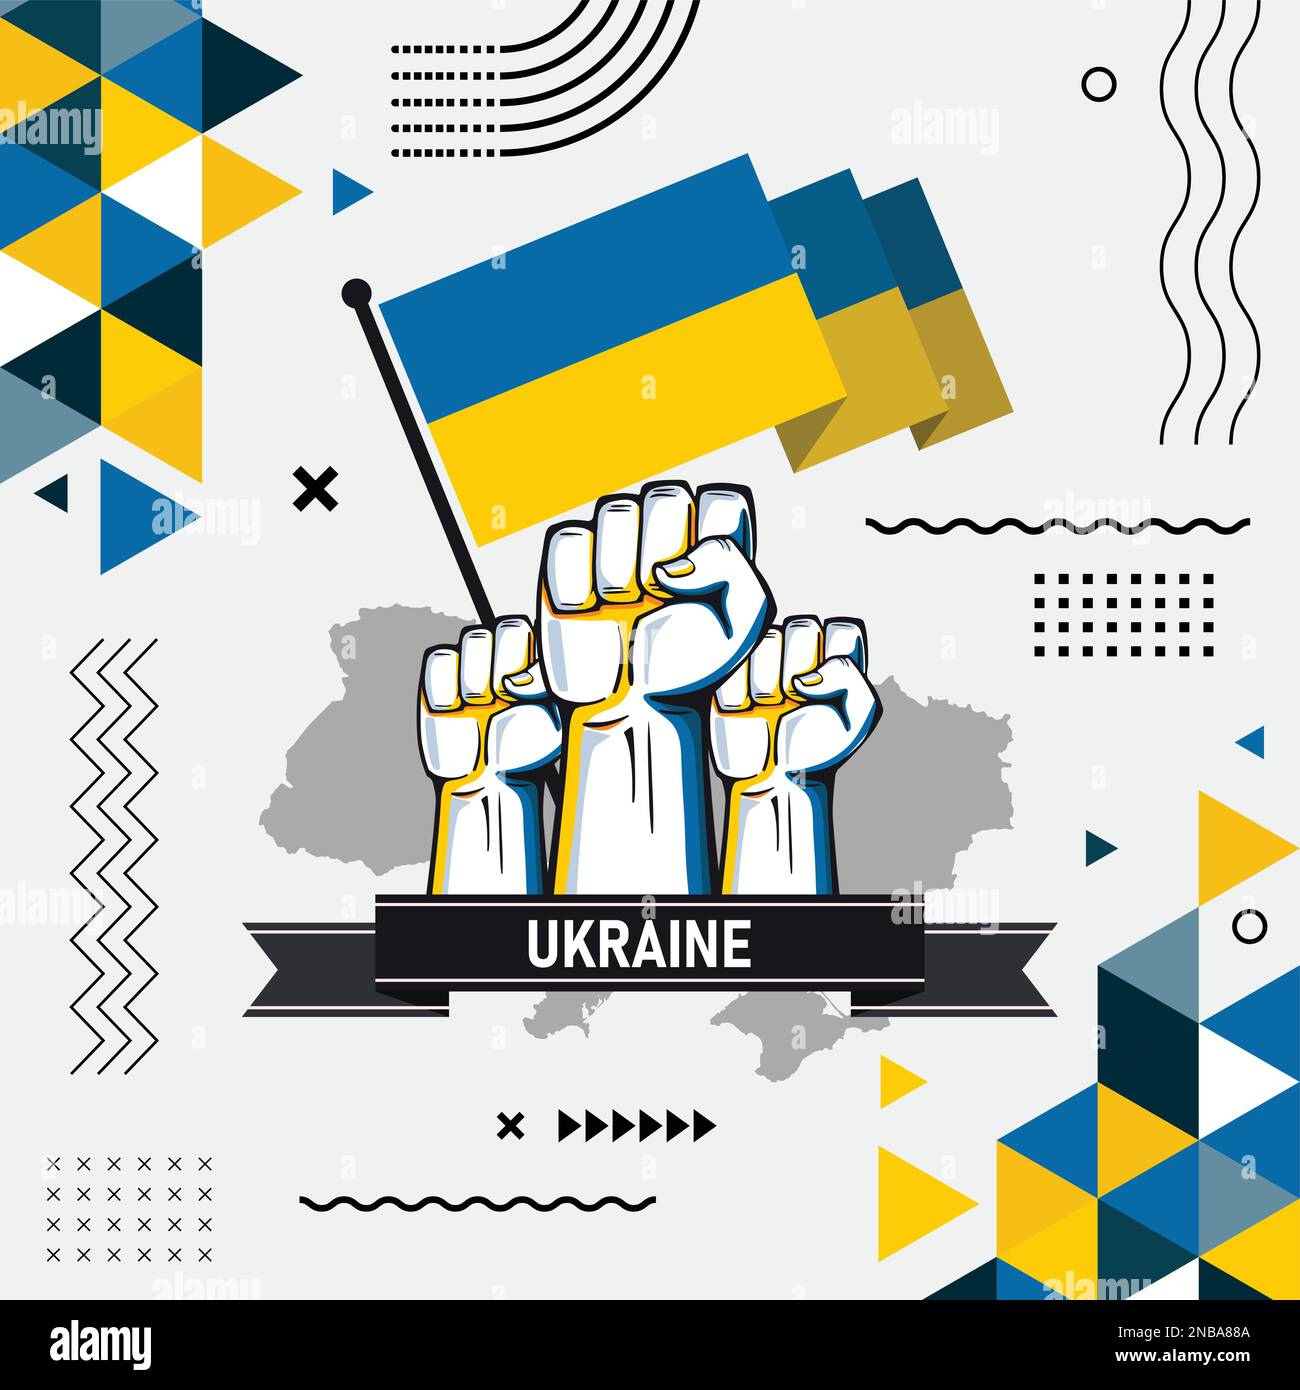 Bandiera Ucraina arte vettoriale, icone e grafica per il download